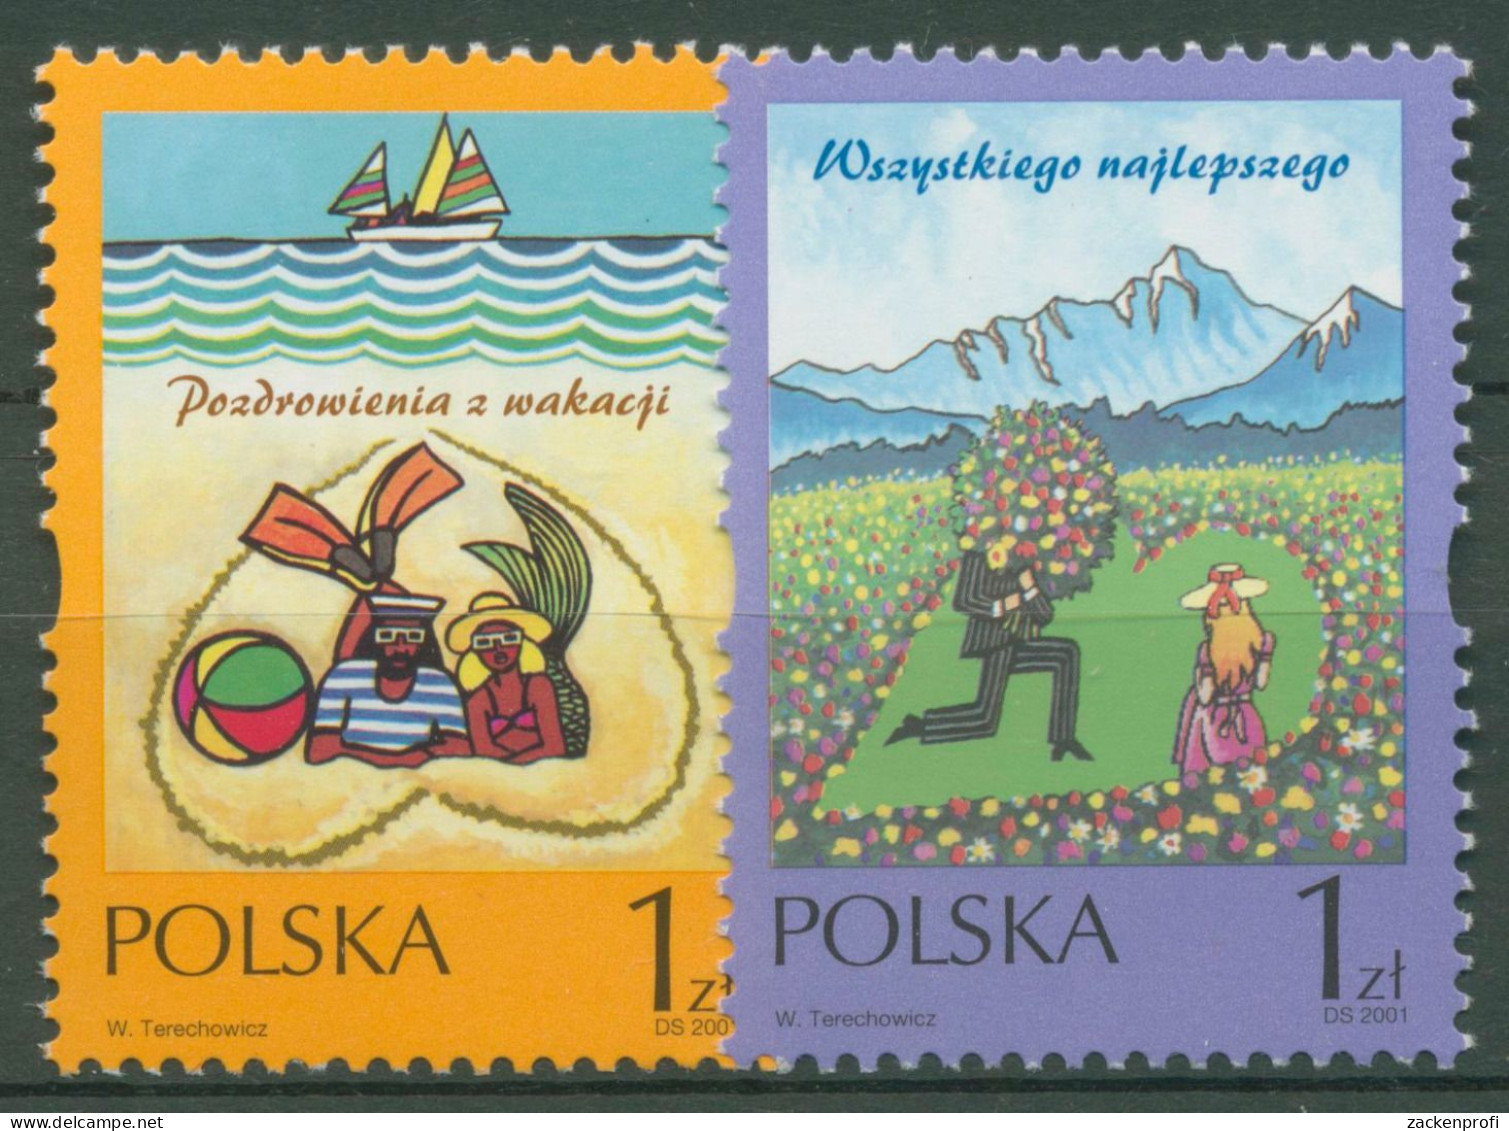 Polen 2001 Grußmarken 3887/88 Postfrisch - Unused Stamps